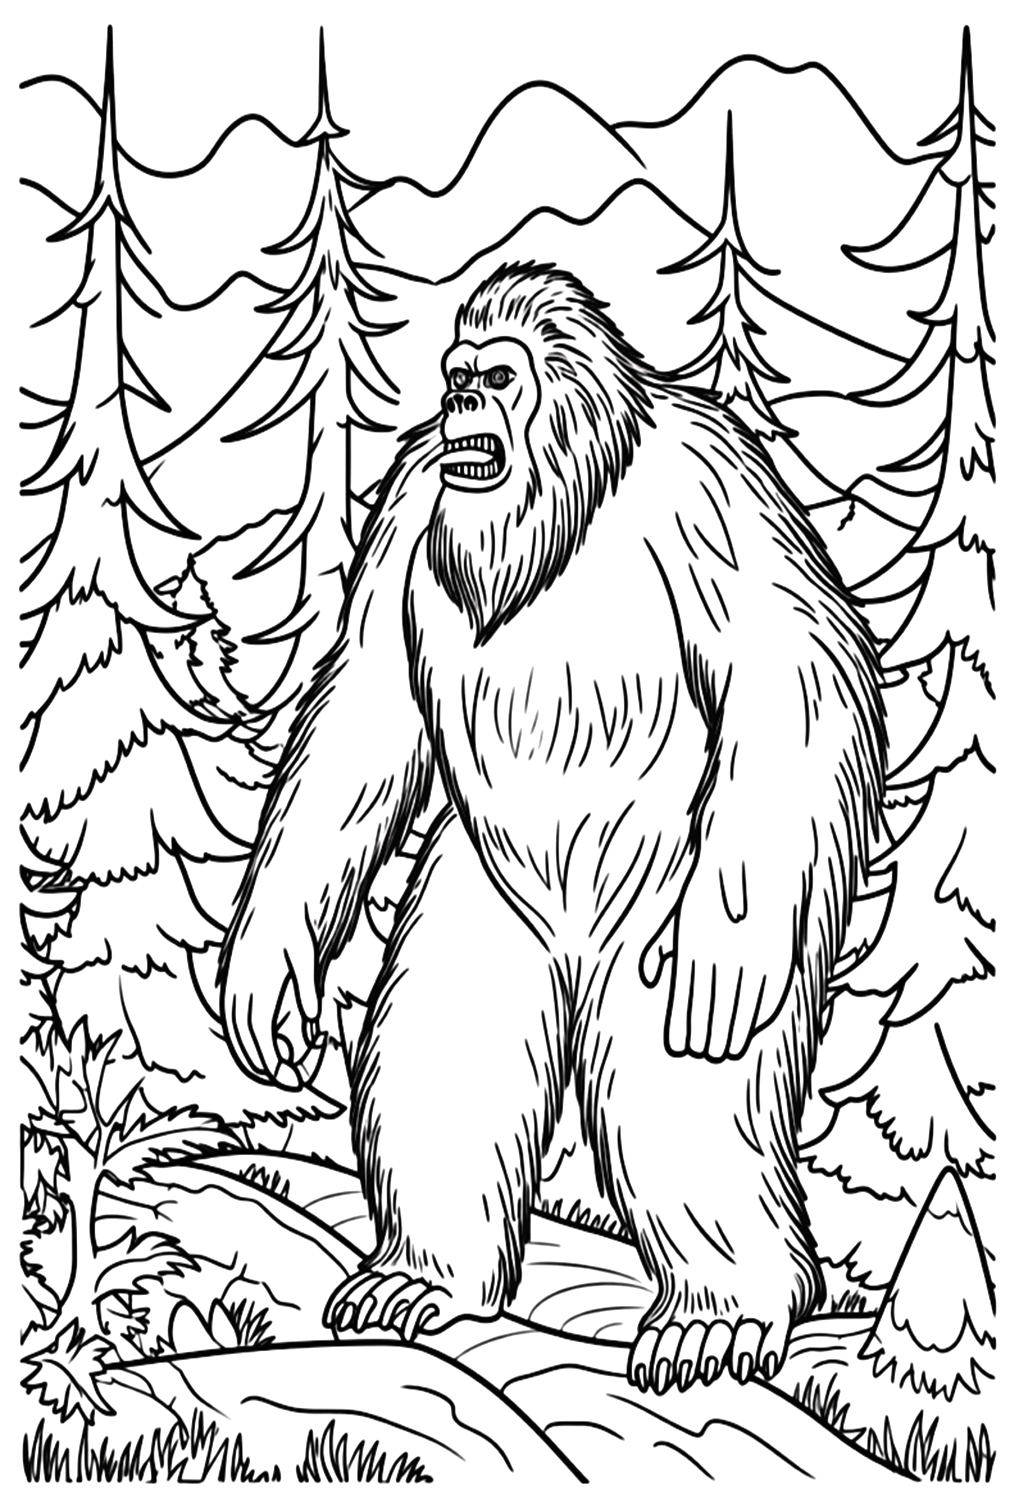 Página para colorear de Sasquatch - Páginas para colorear de Bigfoot ...